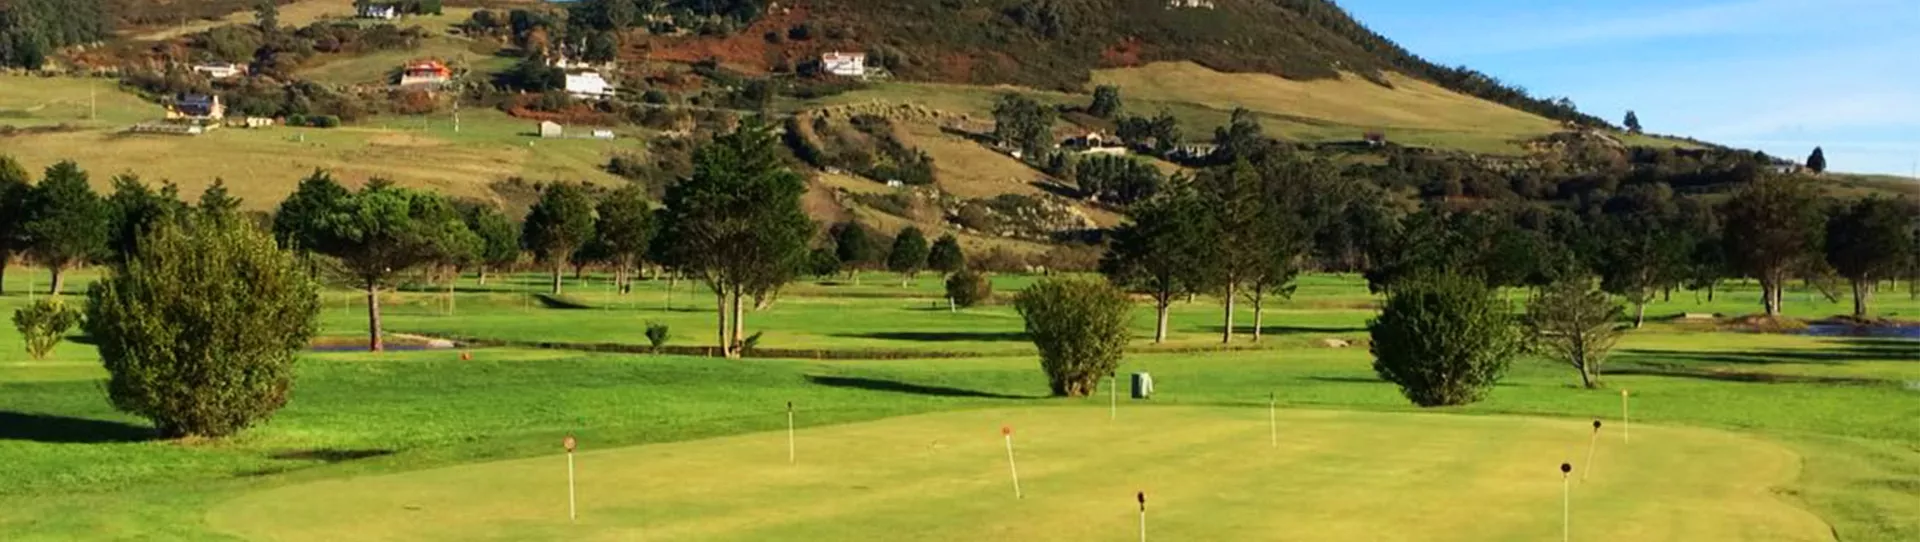 Spain golf courses - Abra del Pas Golf Course - Photo 3